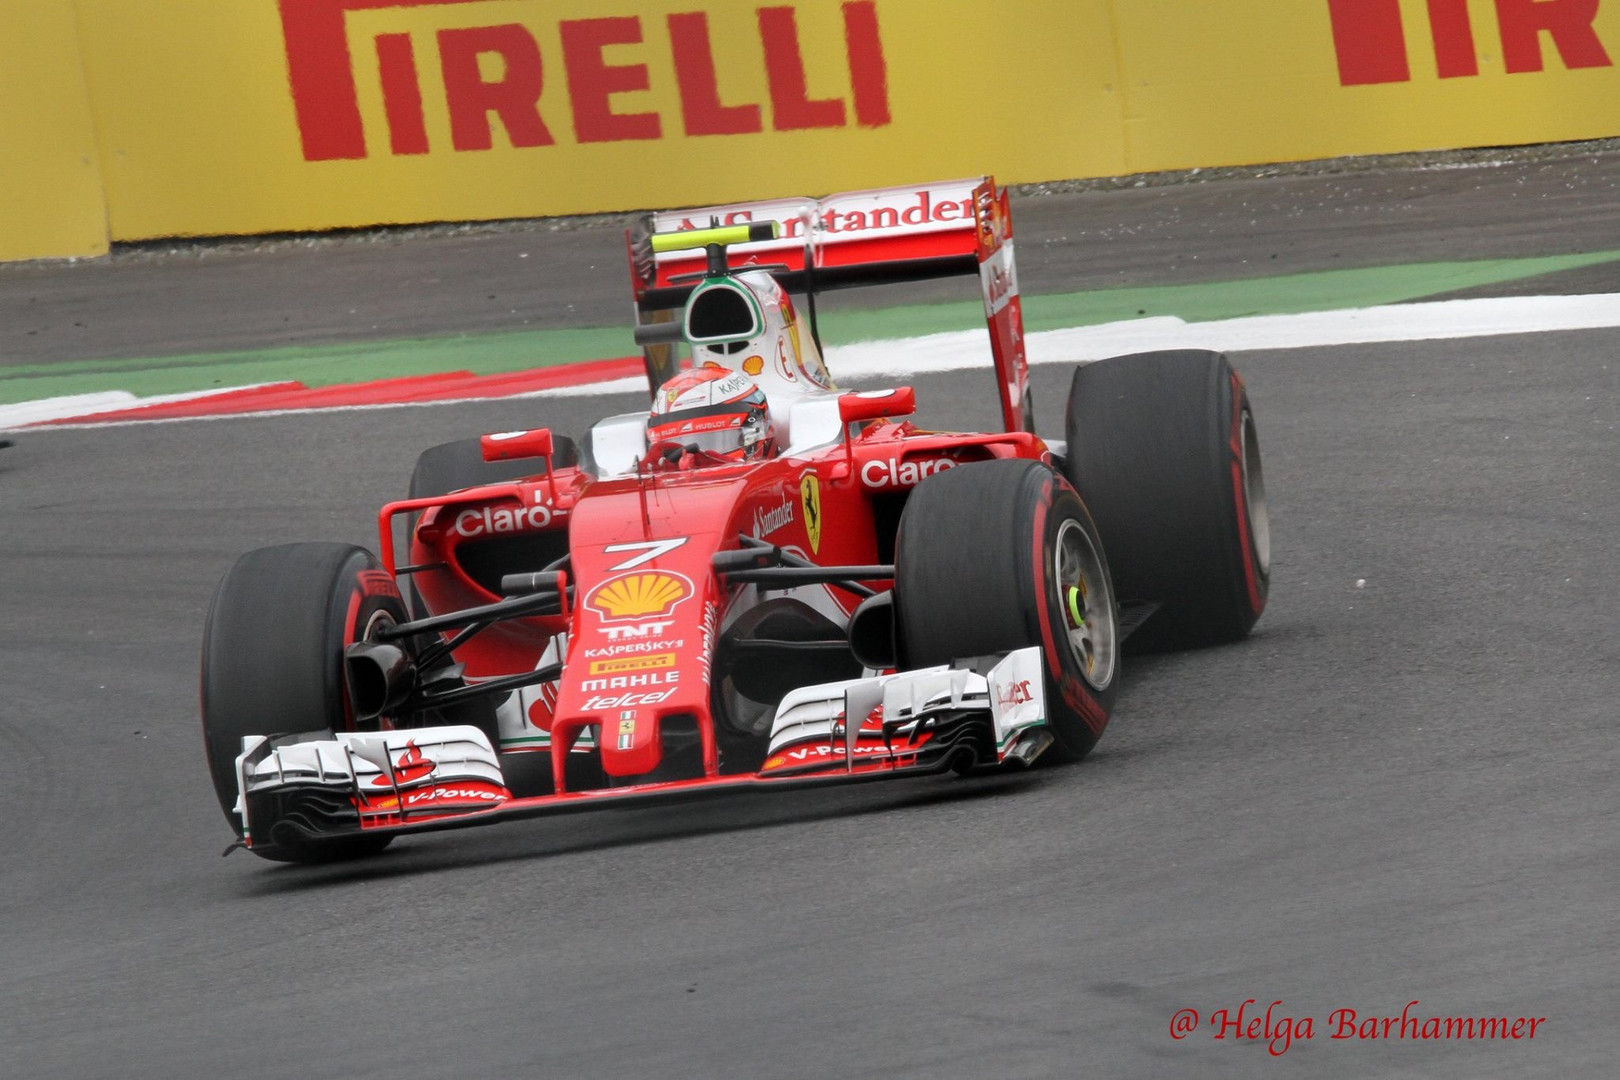 Kimi Räikkönen F1 Ferrari